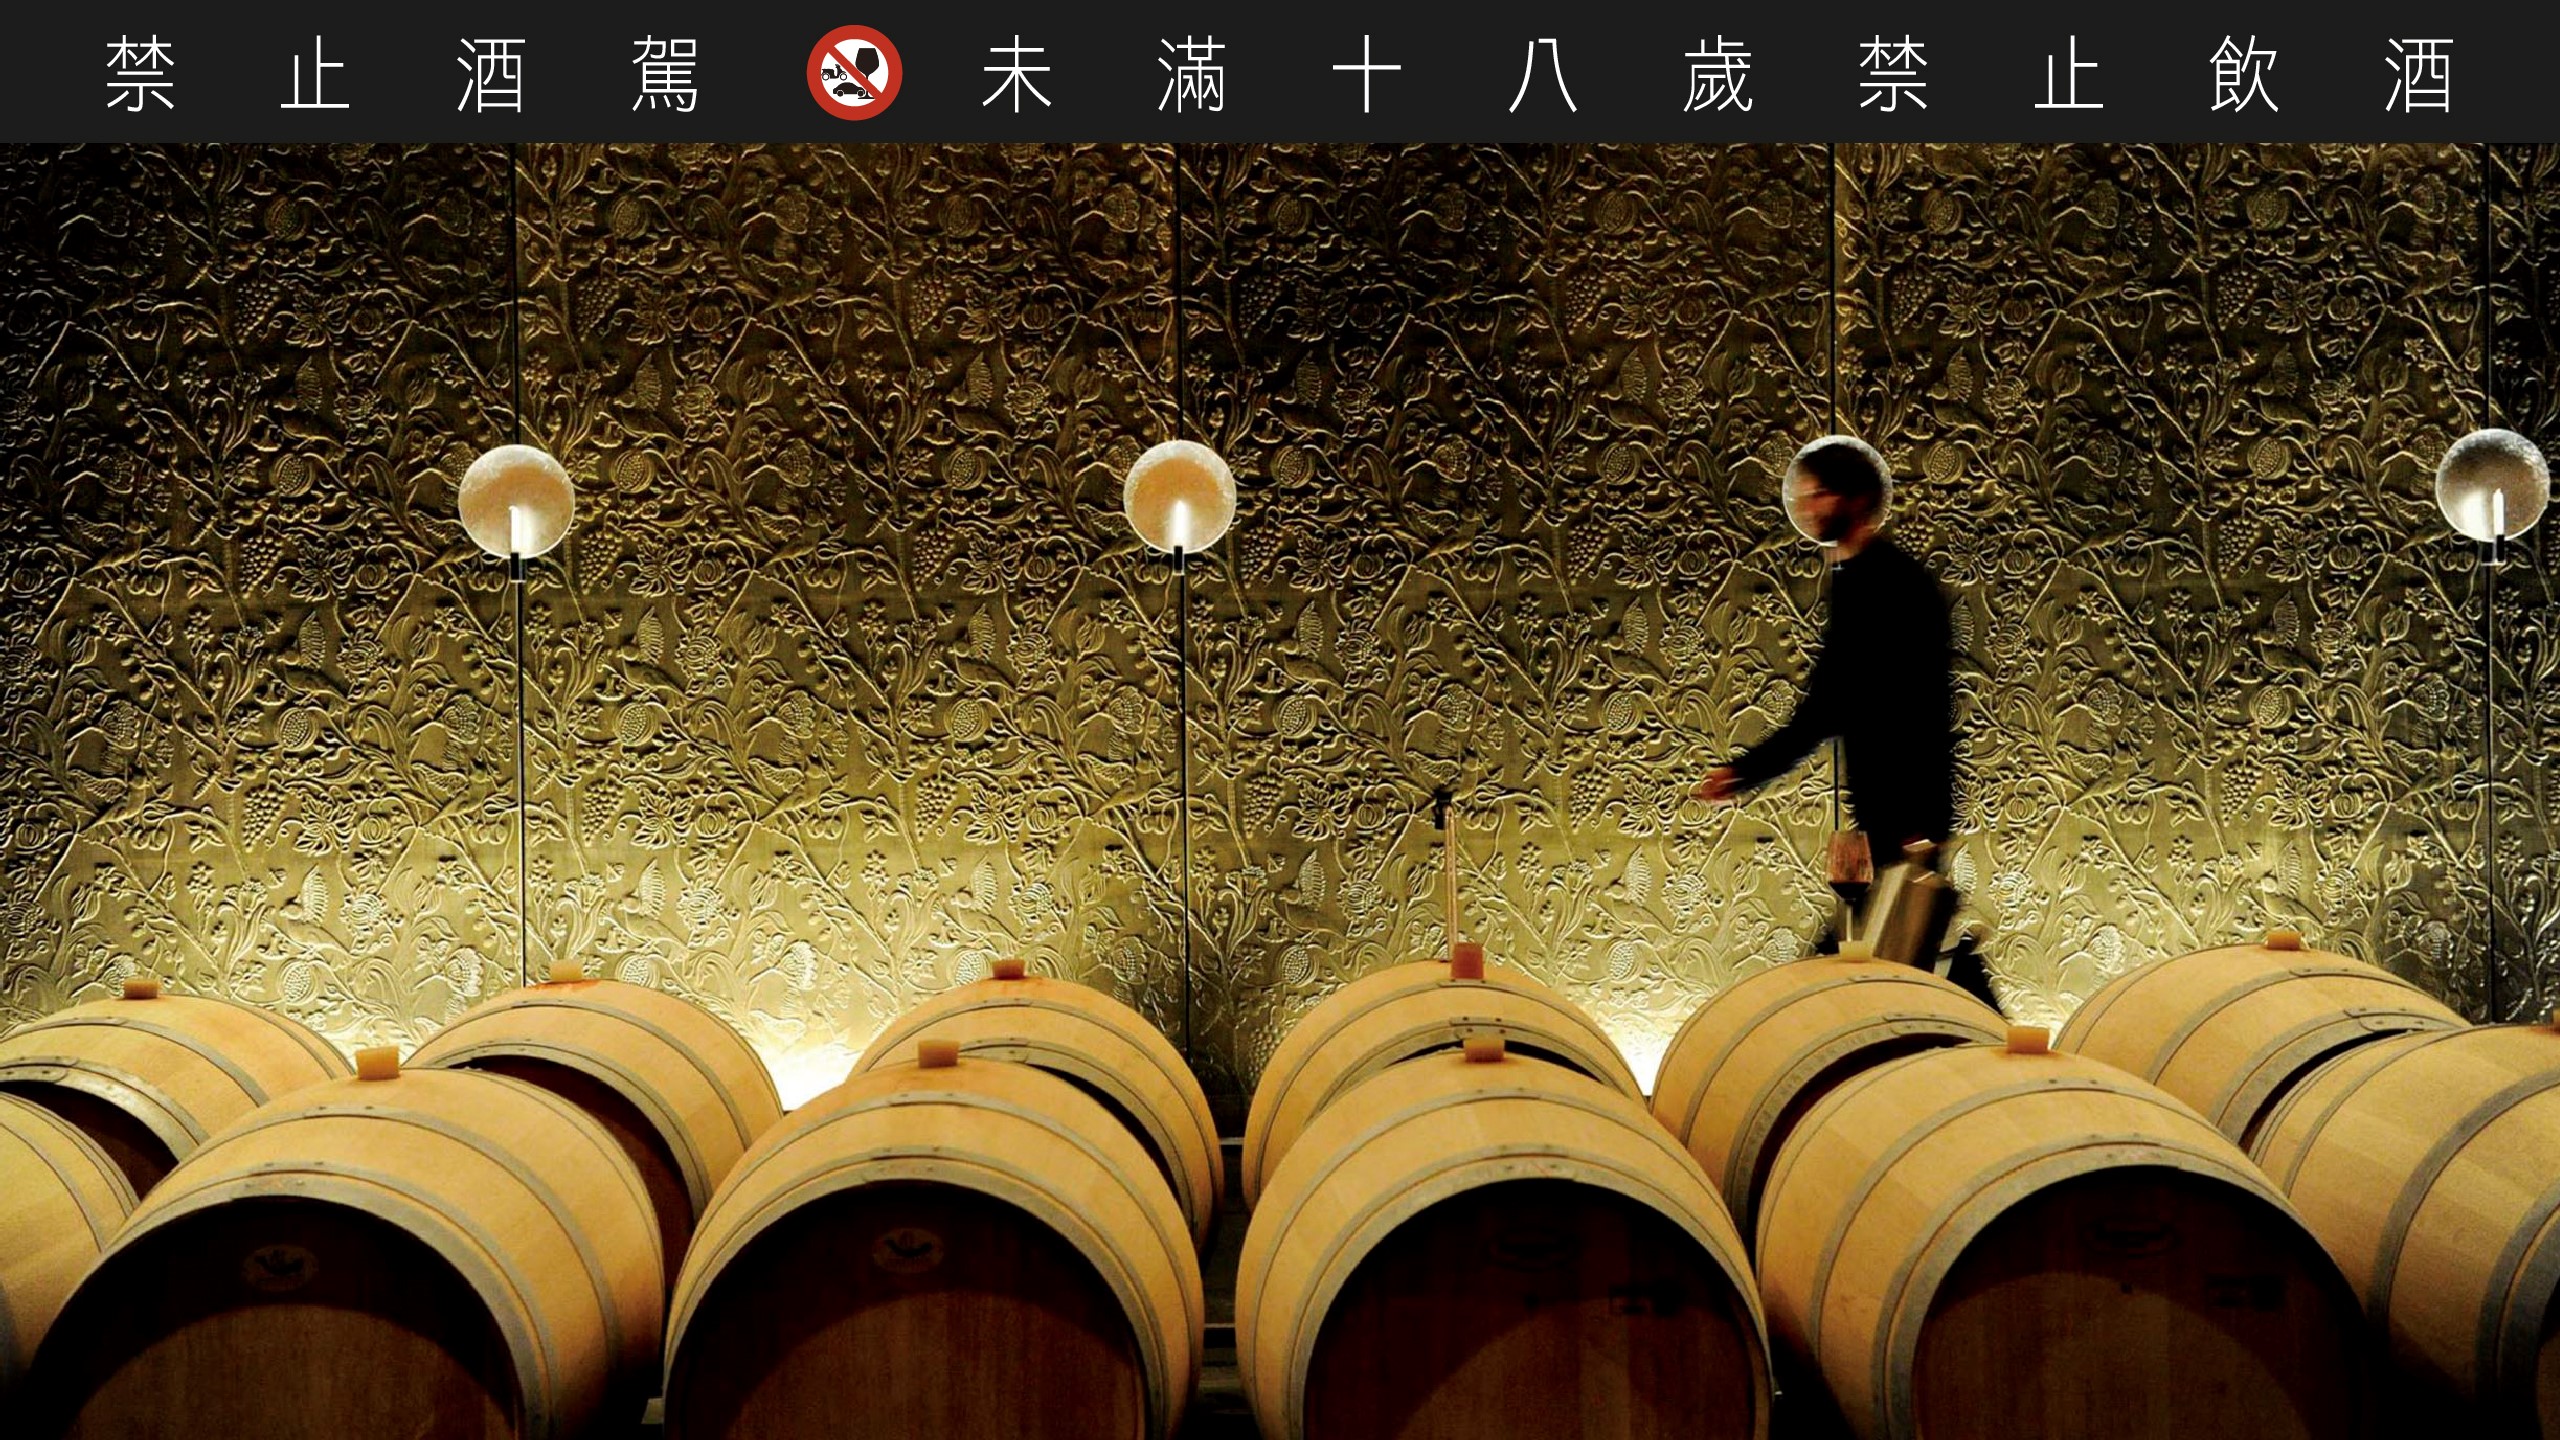 新一代的釀酒師採用現代科技控管葡萄栽培與釀造，並向世界敞開大門，是波爾多葡萄酒產業在本世紀的轉型。